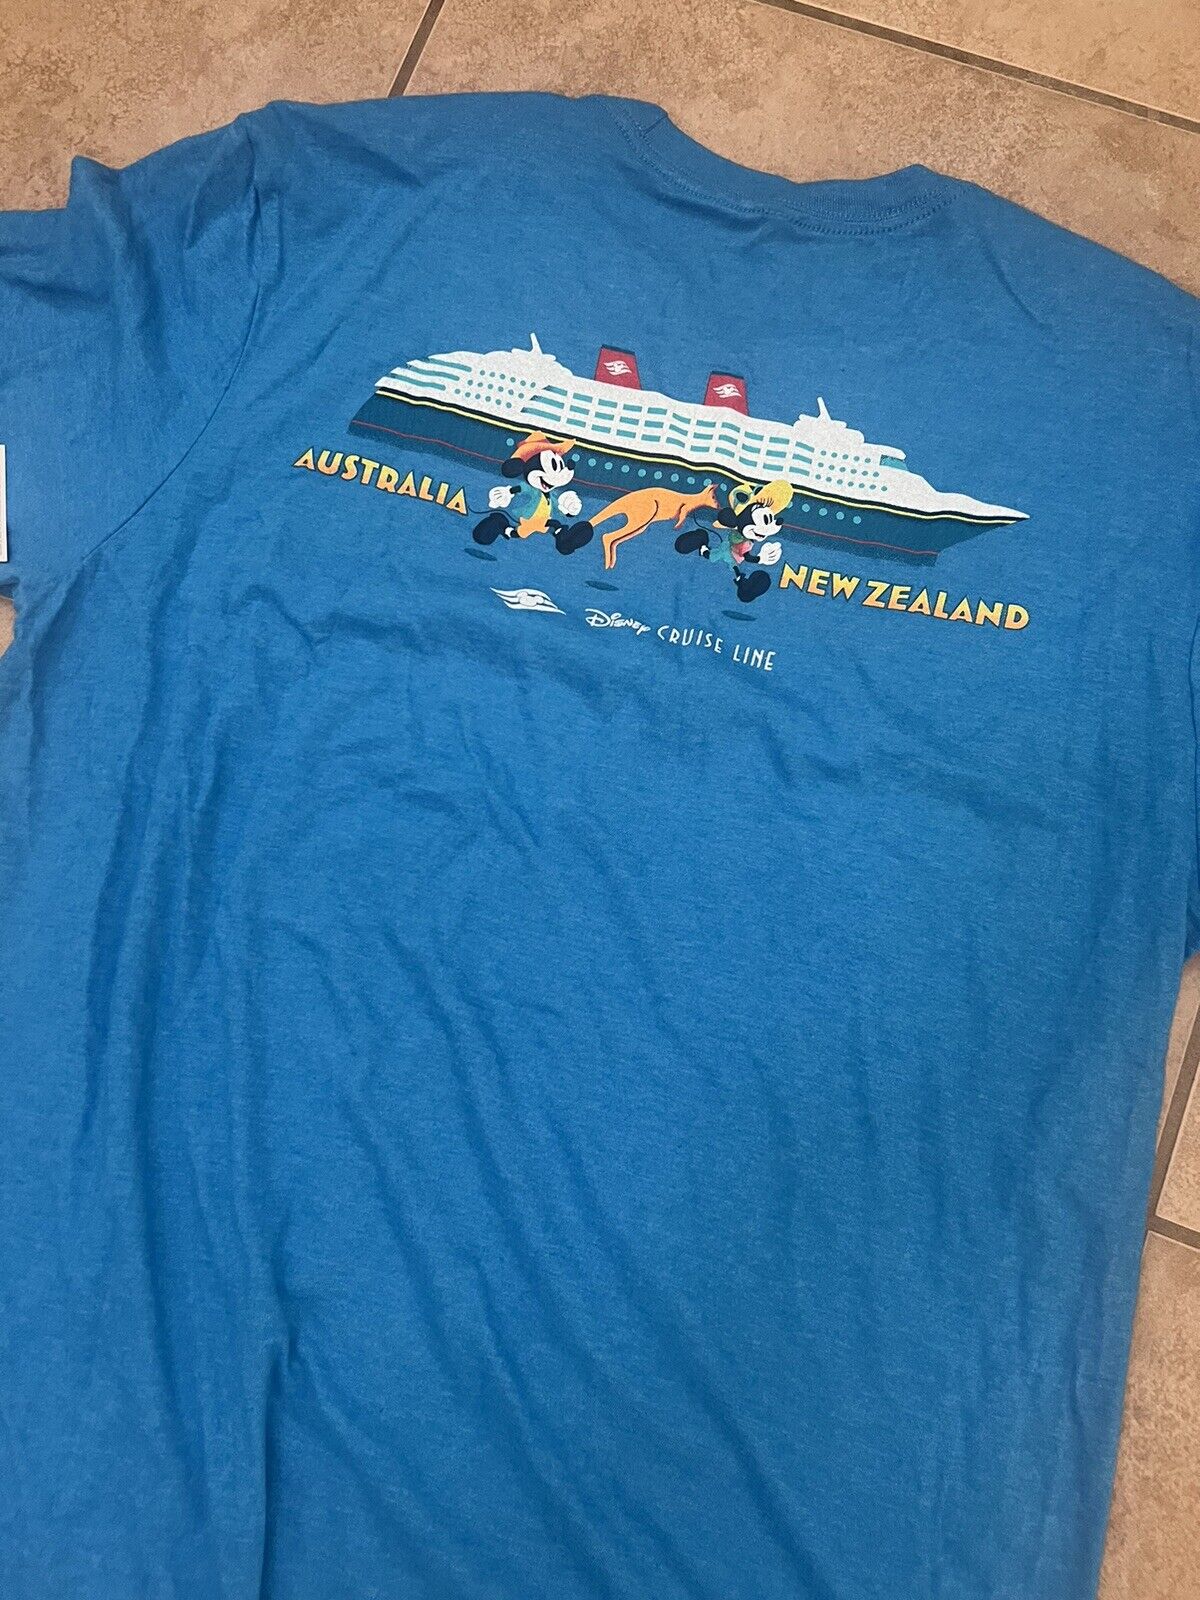 Disney Cruise Line Wonder DCL Shirt Australia New Zealand Adult Size Large NWT